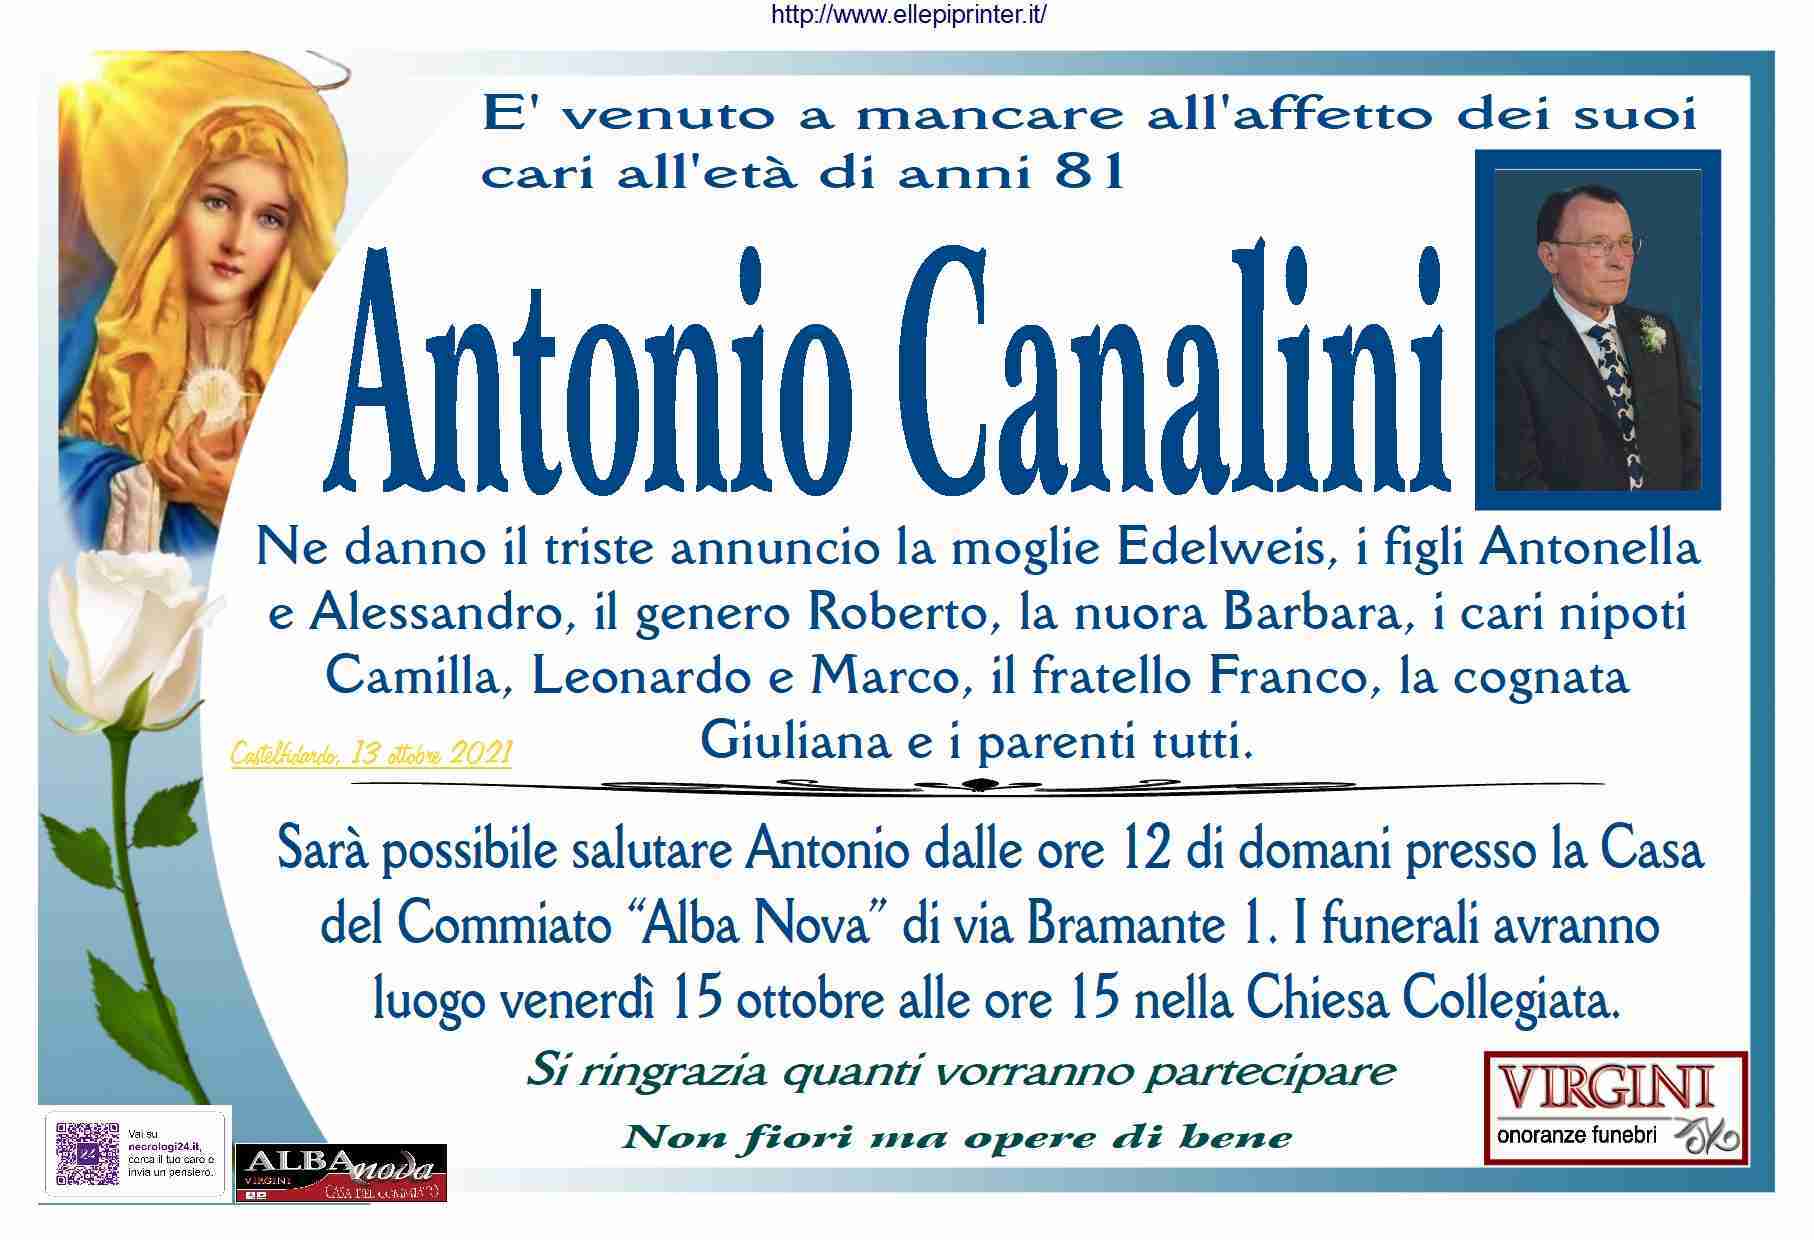 Antonio Canalini